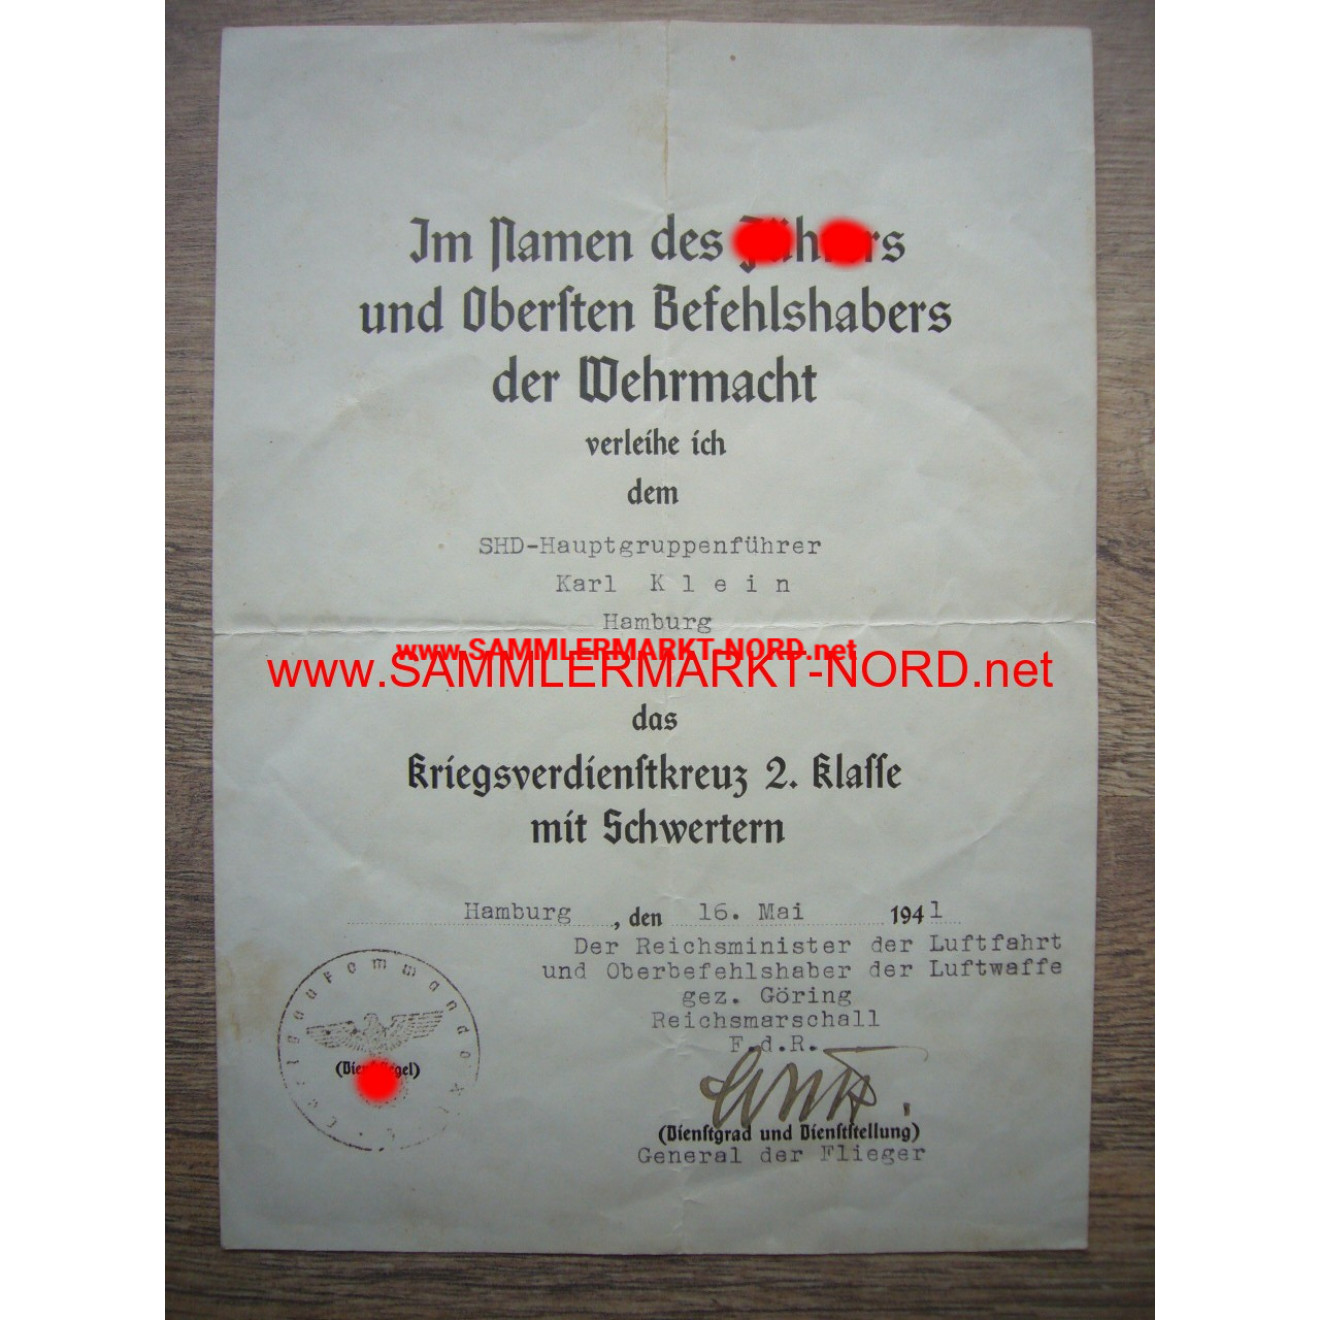 KVK Urkunde - General LUDWIG WOLFF - Autograph